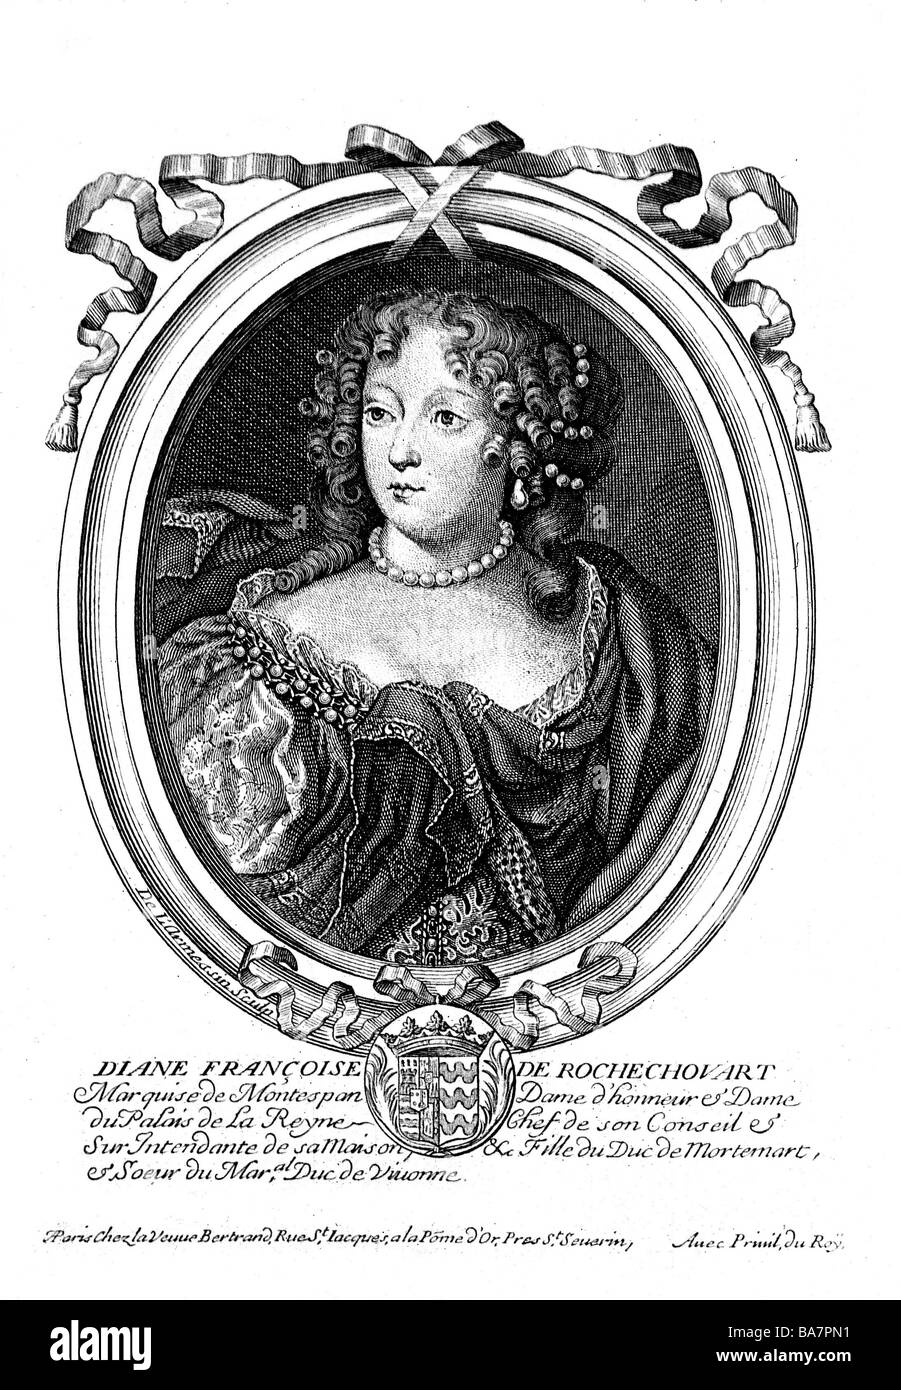 Montespan, Diane Francoise Marquise de, 1641 - 27.5.1707, amante di Luigi XIV, ritratto, incisione su rame, XVIII secolo, artista del diritto d'autore non deve essere cancellata Foto Stock